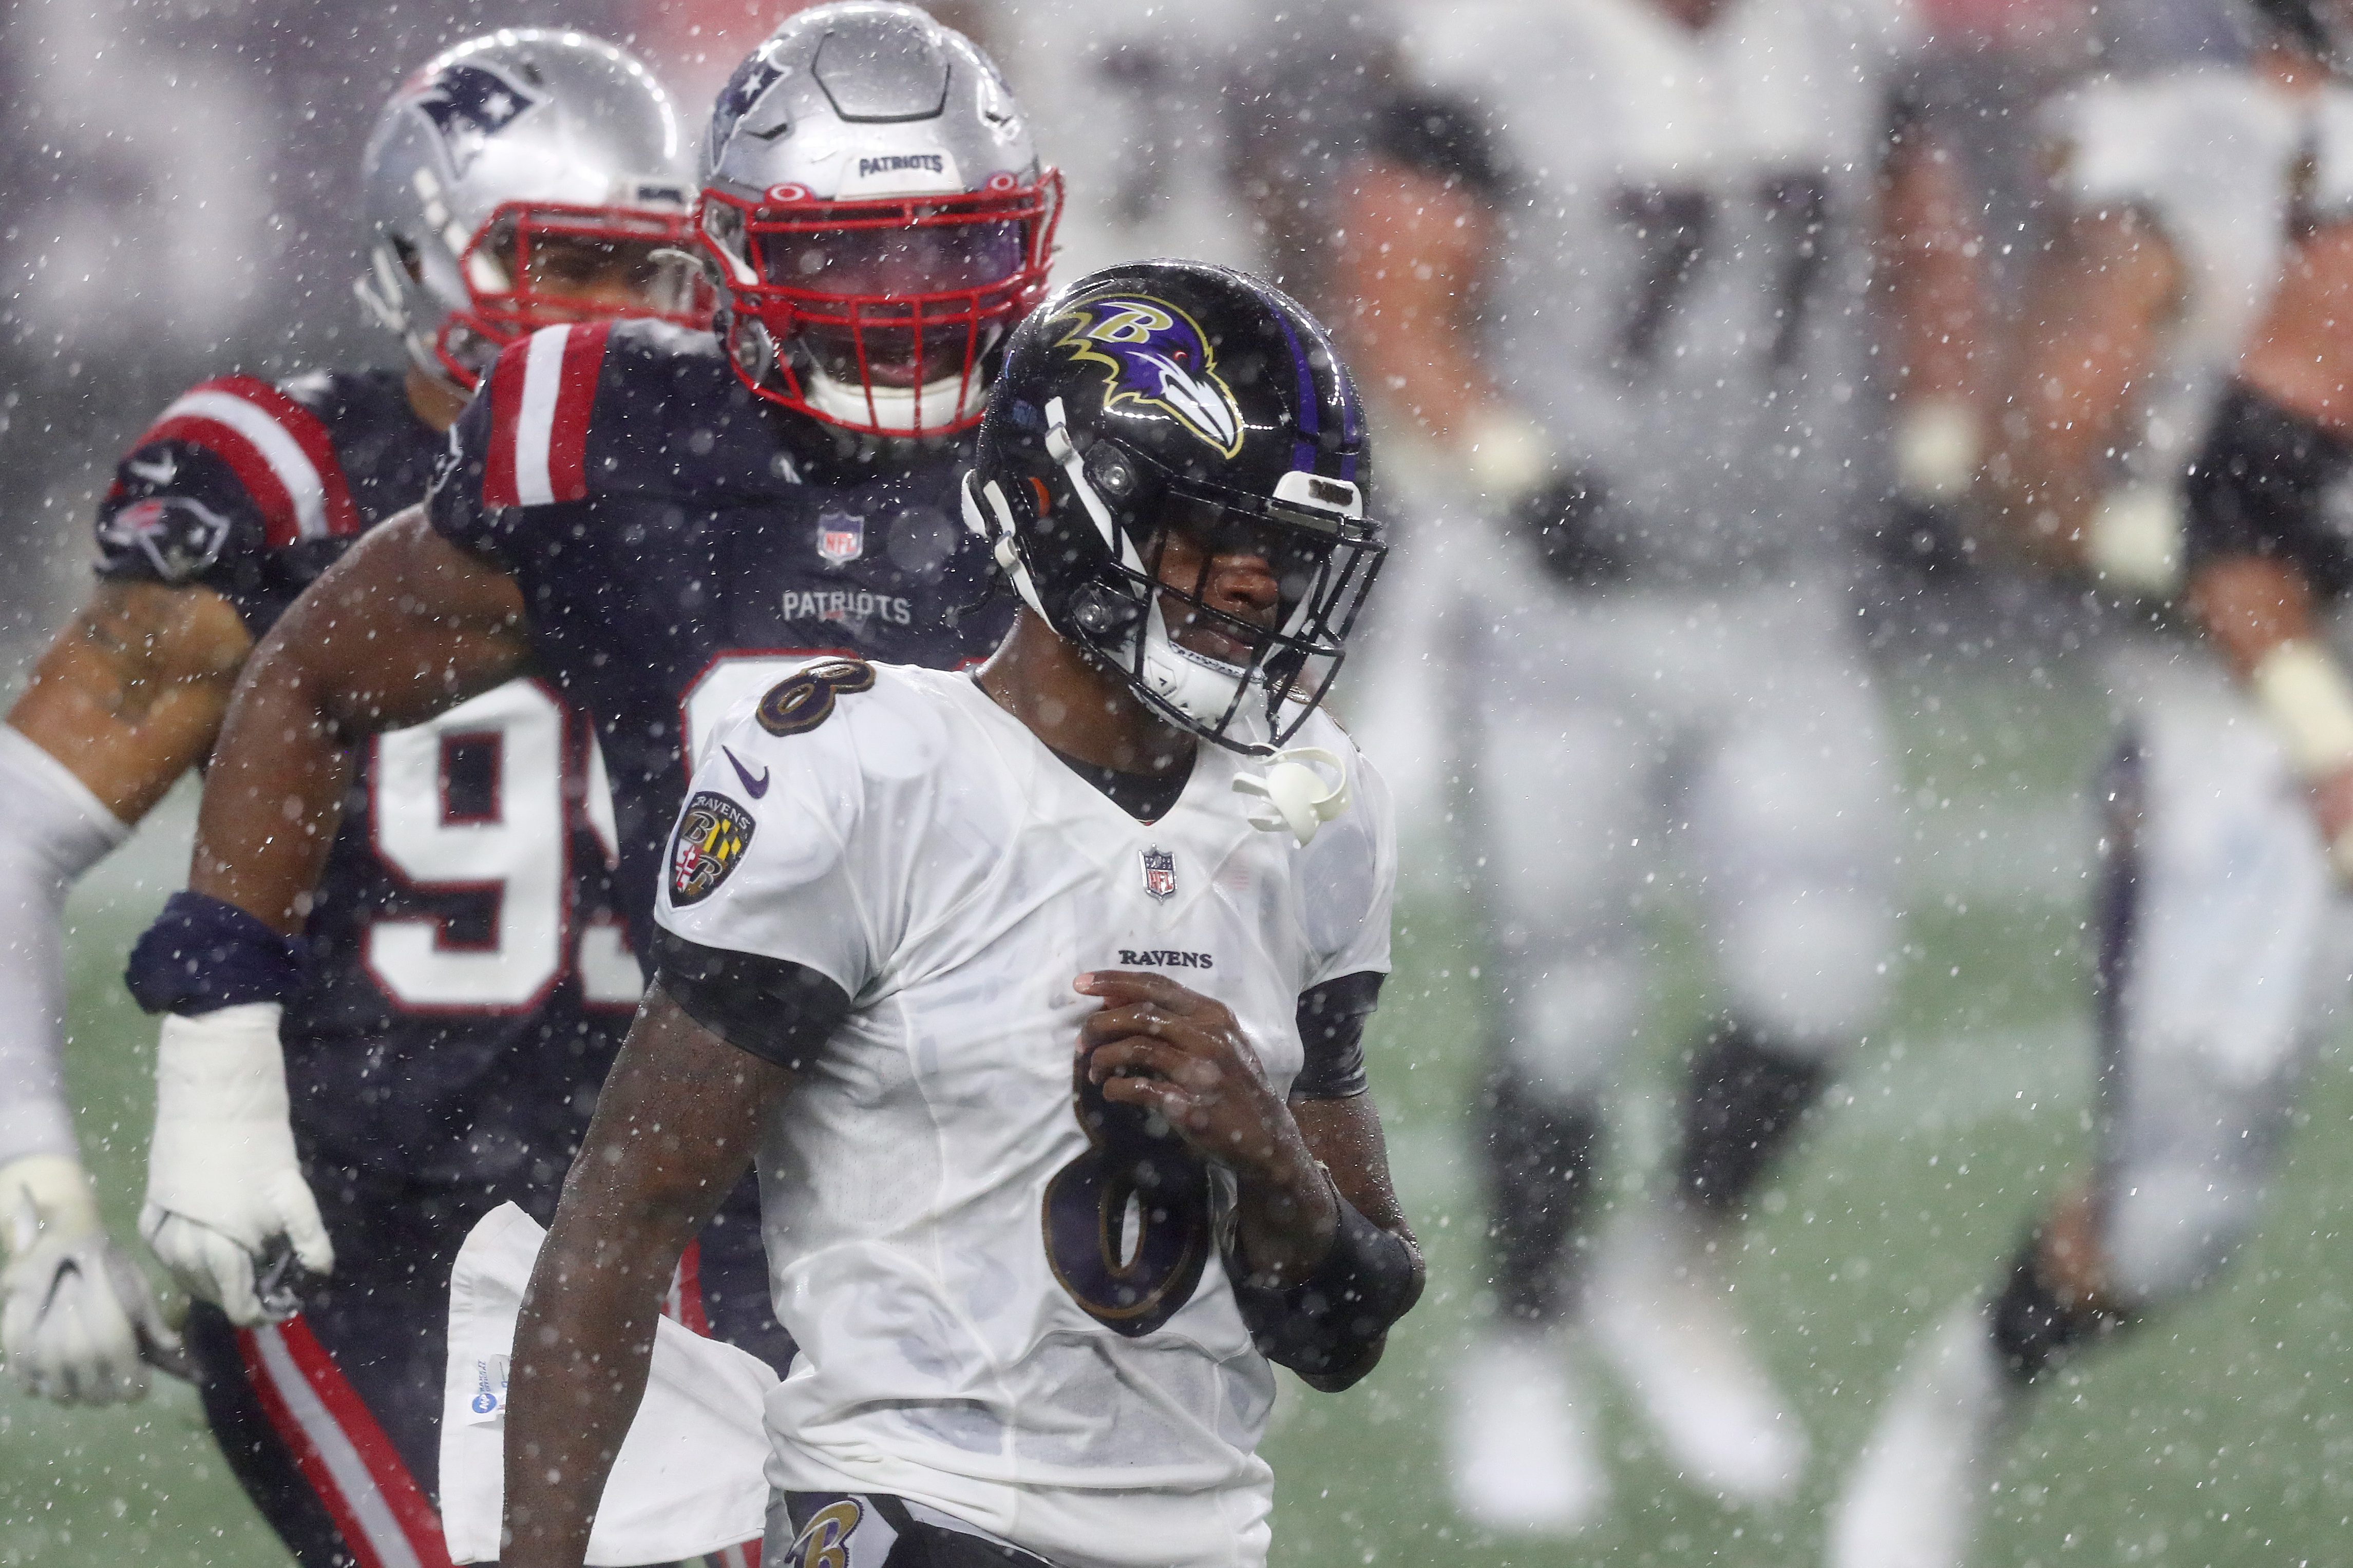 Patriots Upset Ravens 23-17 in Rain on "Sunday Night Football"